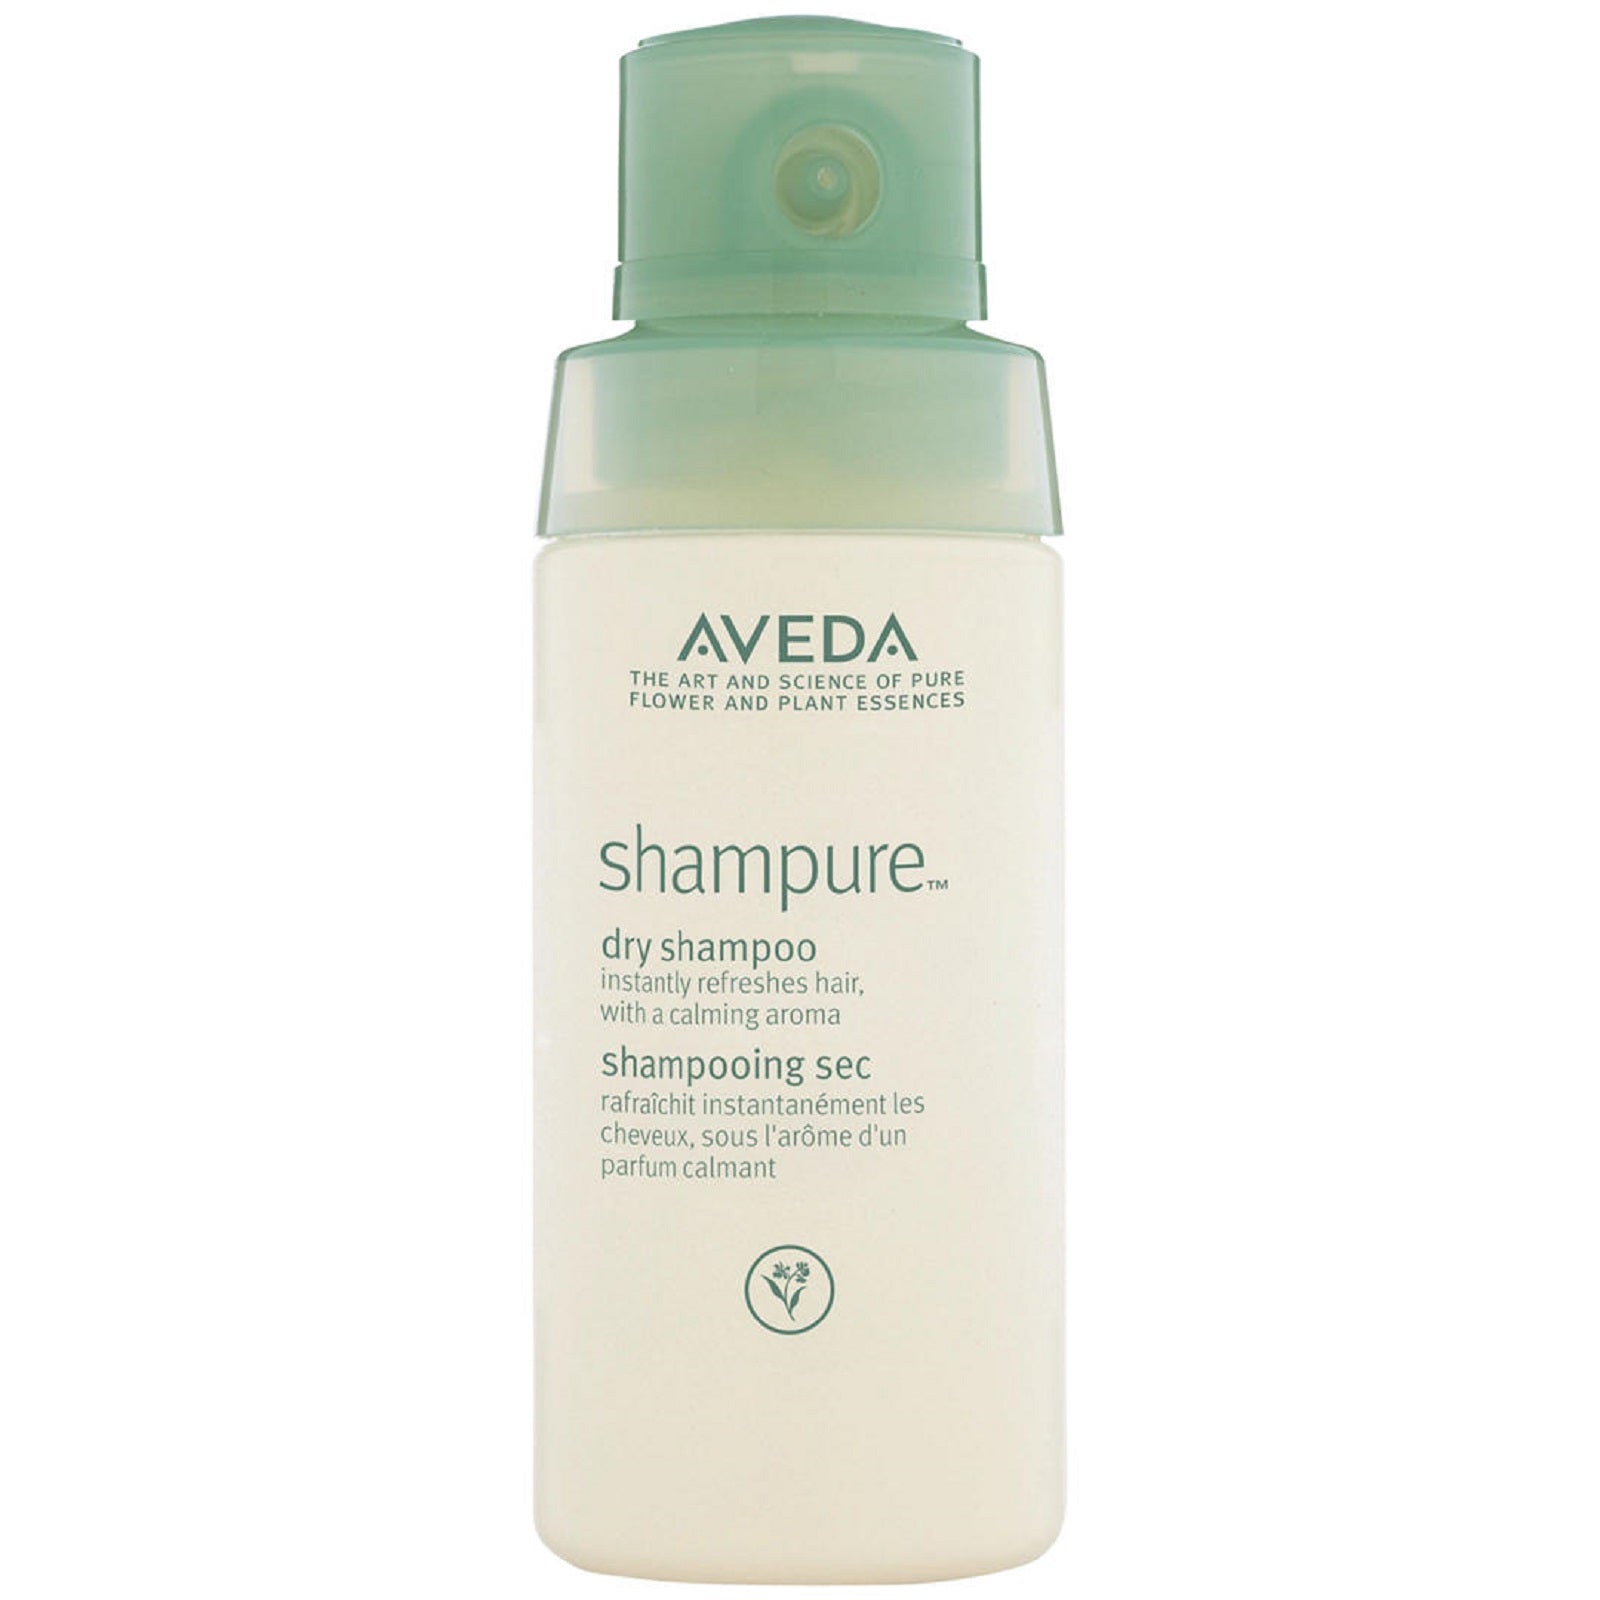 AVEDA Shampure Dry Shampoo 56g 2oz